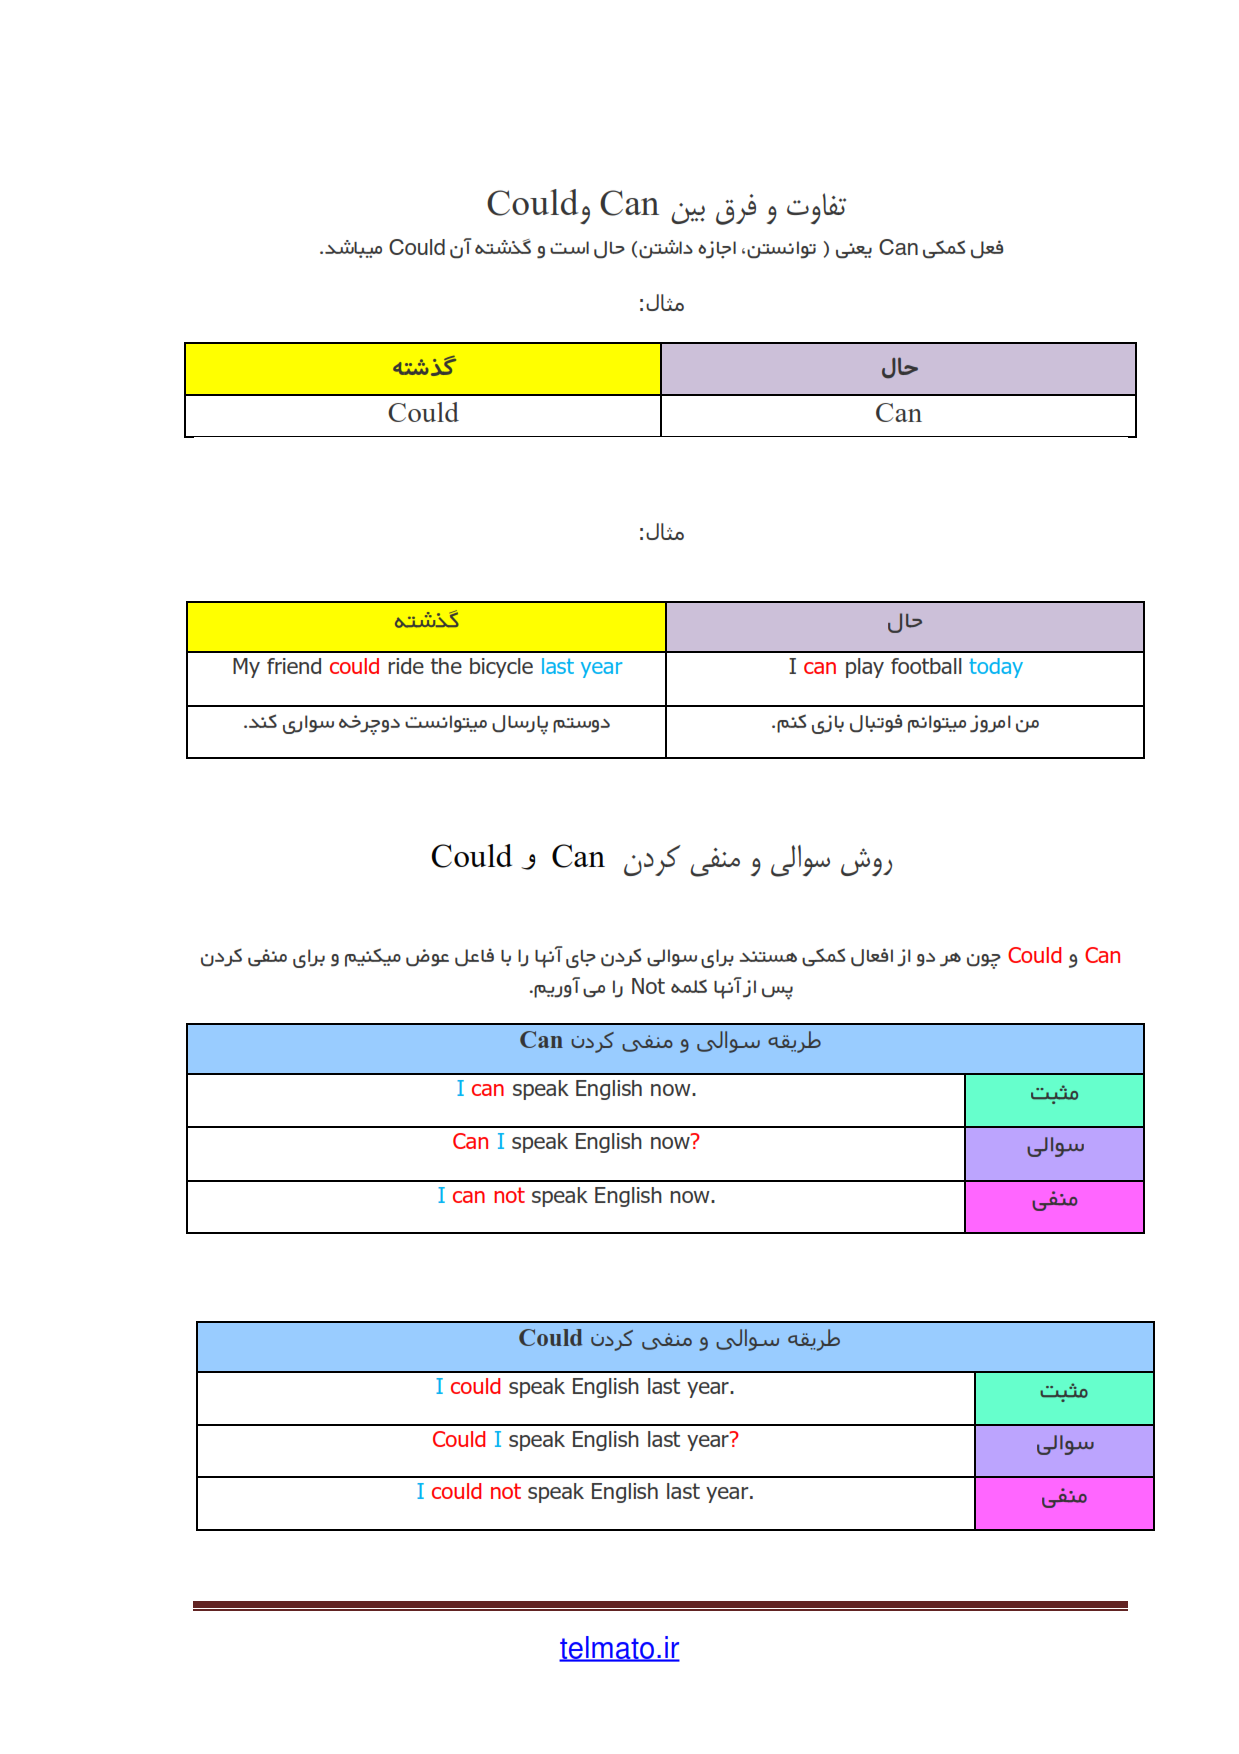 دانلود فایل pdf کتاب آموزش زبان انگلیسی نصرت در 90 روز | متن دروس زبان نصرت در 3 ماه رایگان 